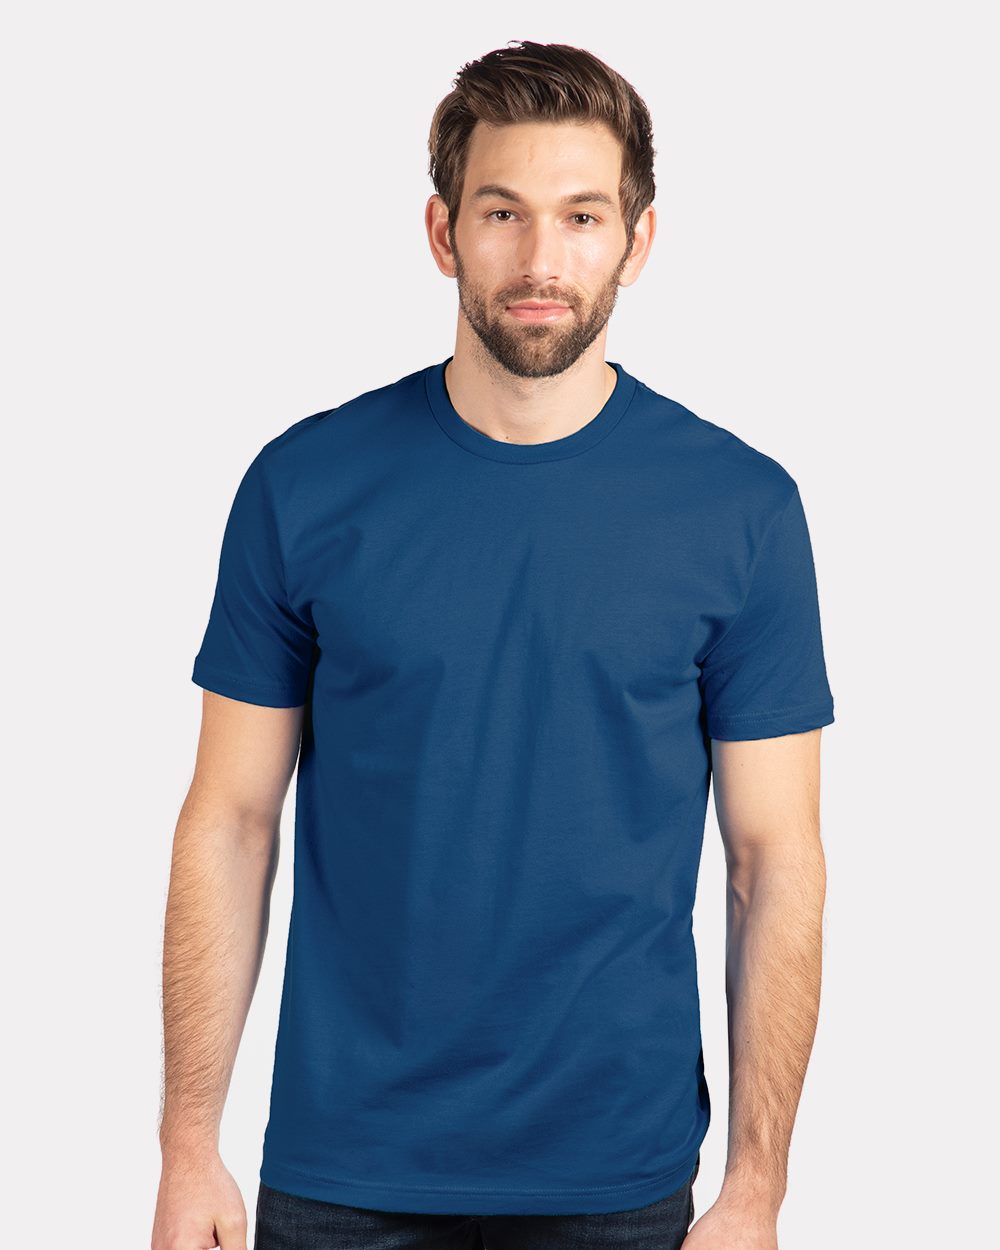 Blue Cotton T-shirt